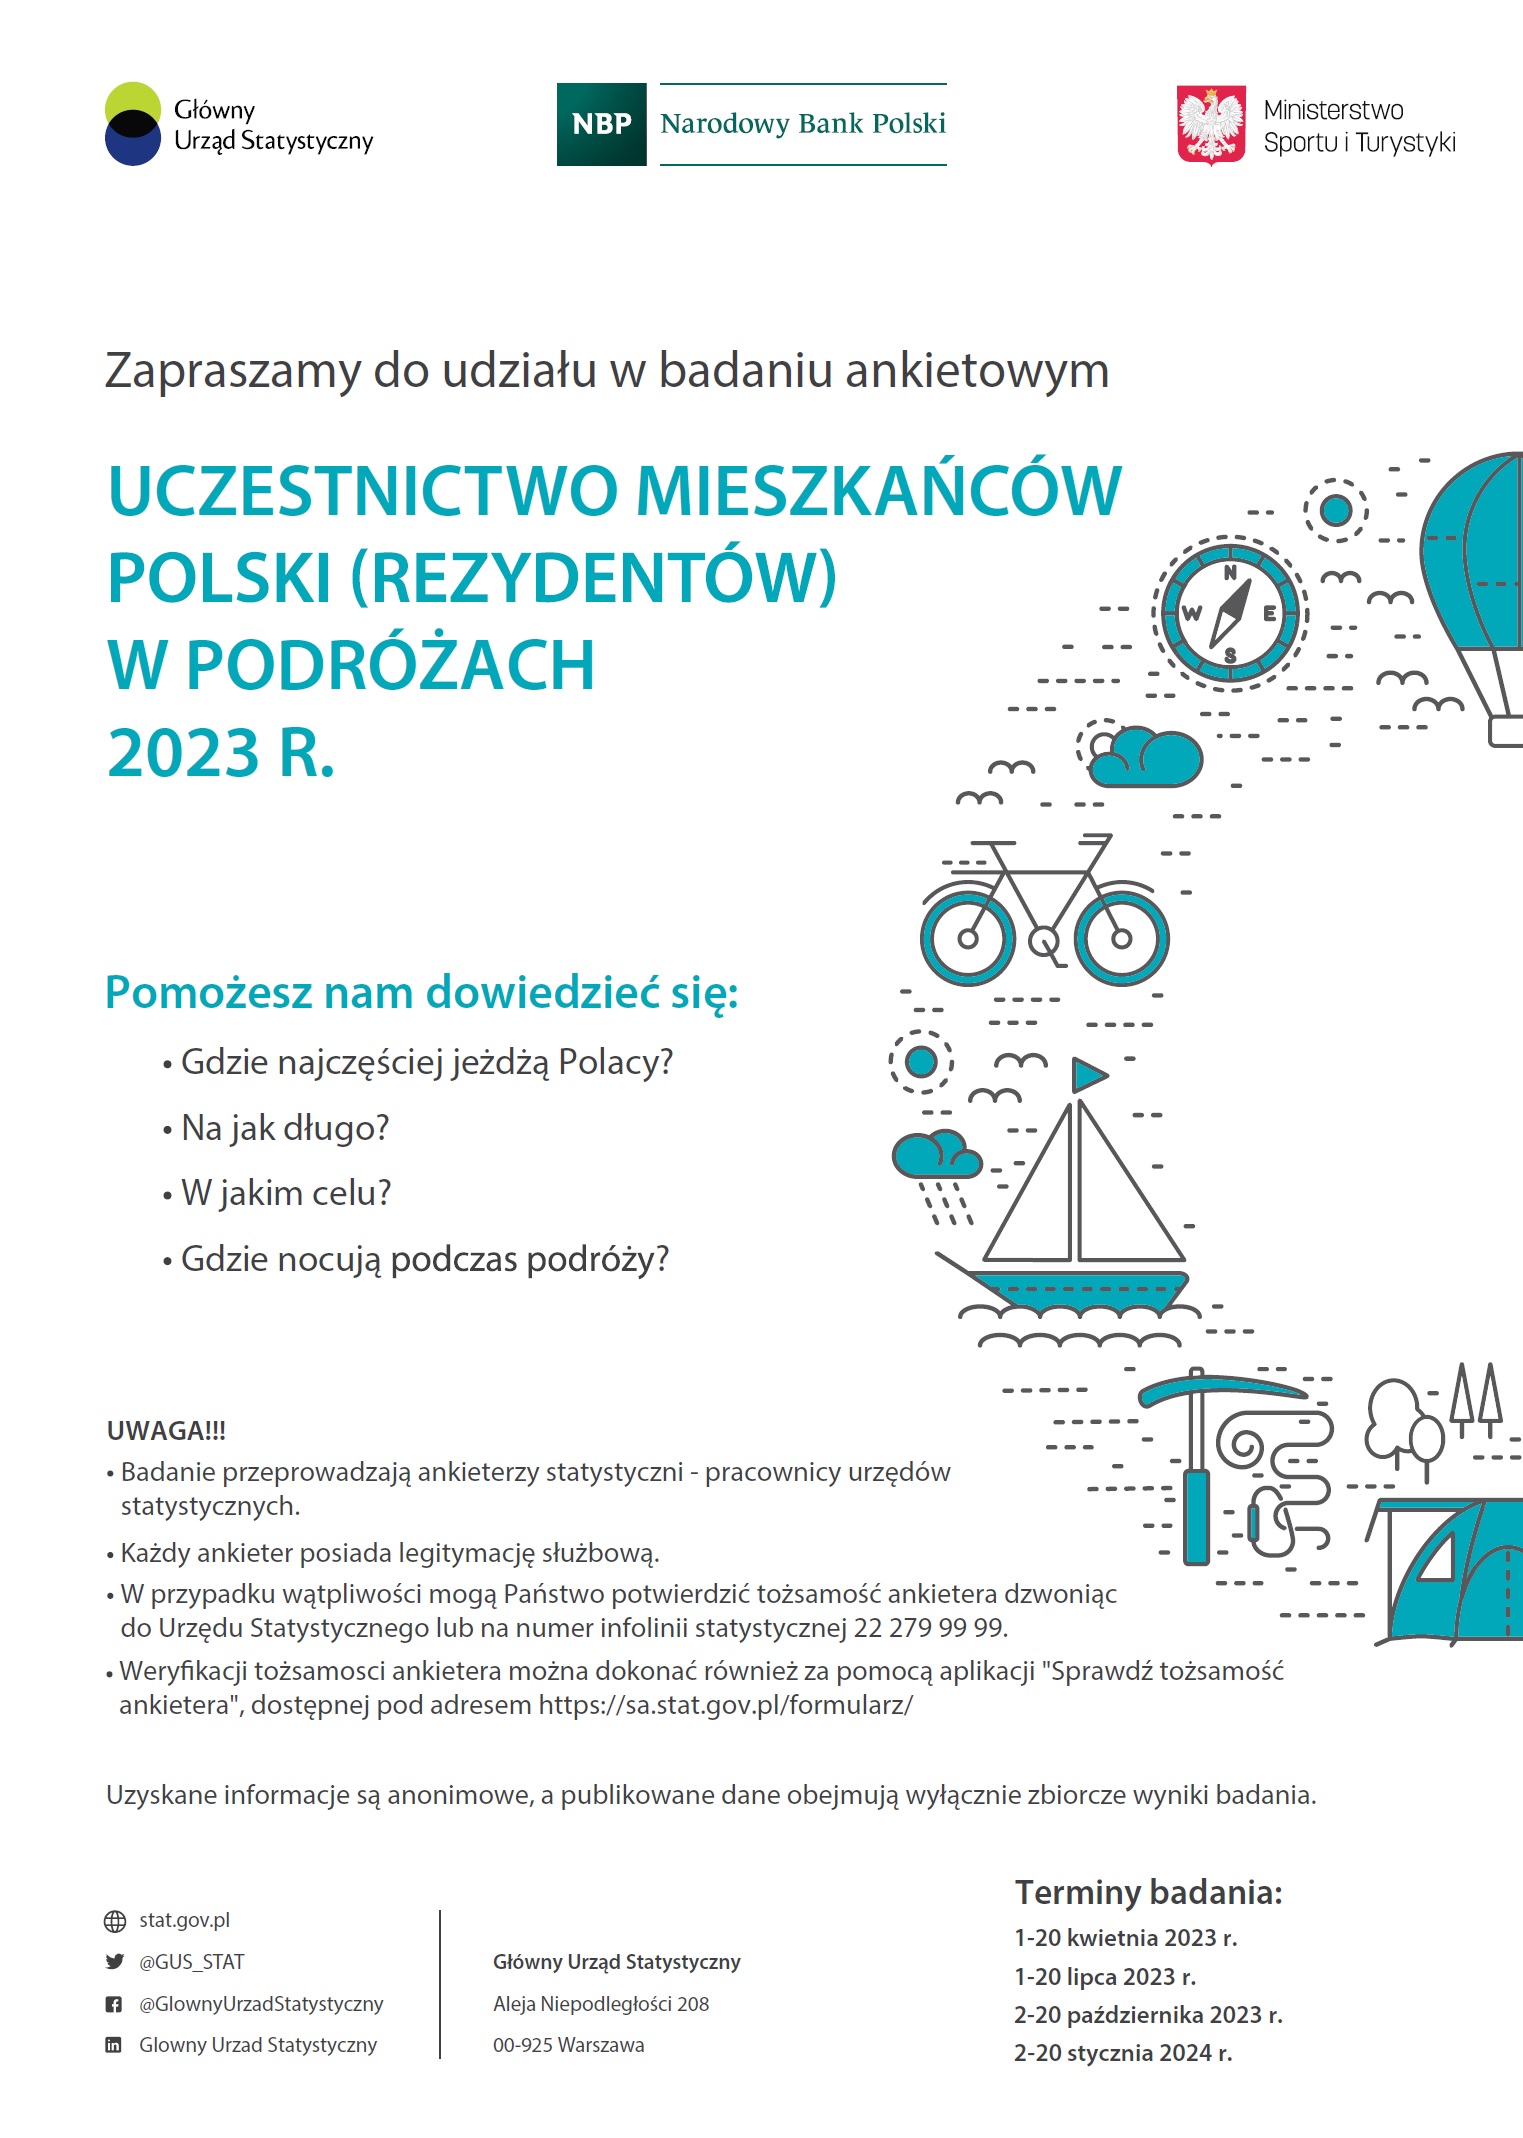 Informacja o badaniu ankietowym - Uczestnictwo mieszkańców Polski w podróżach 2023